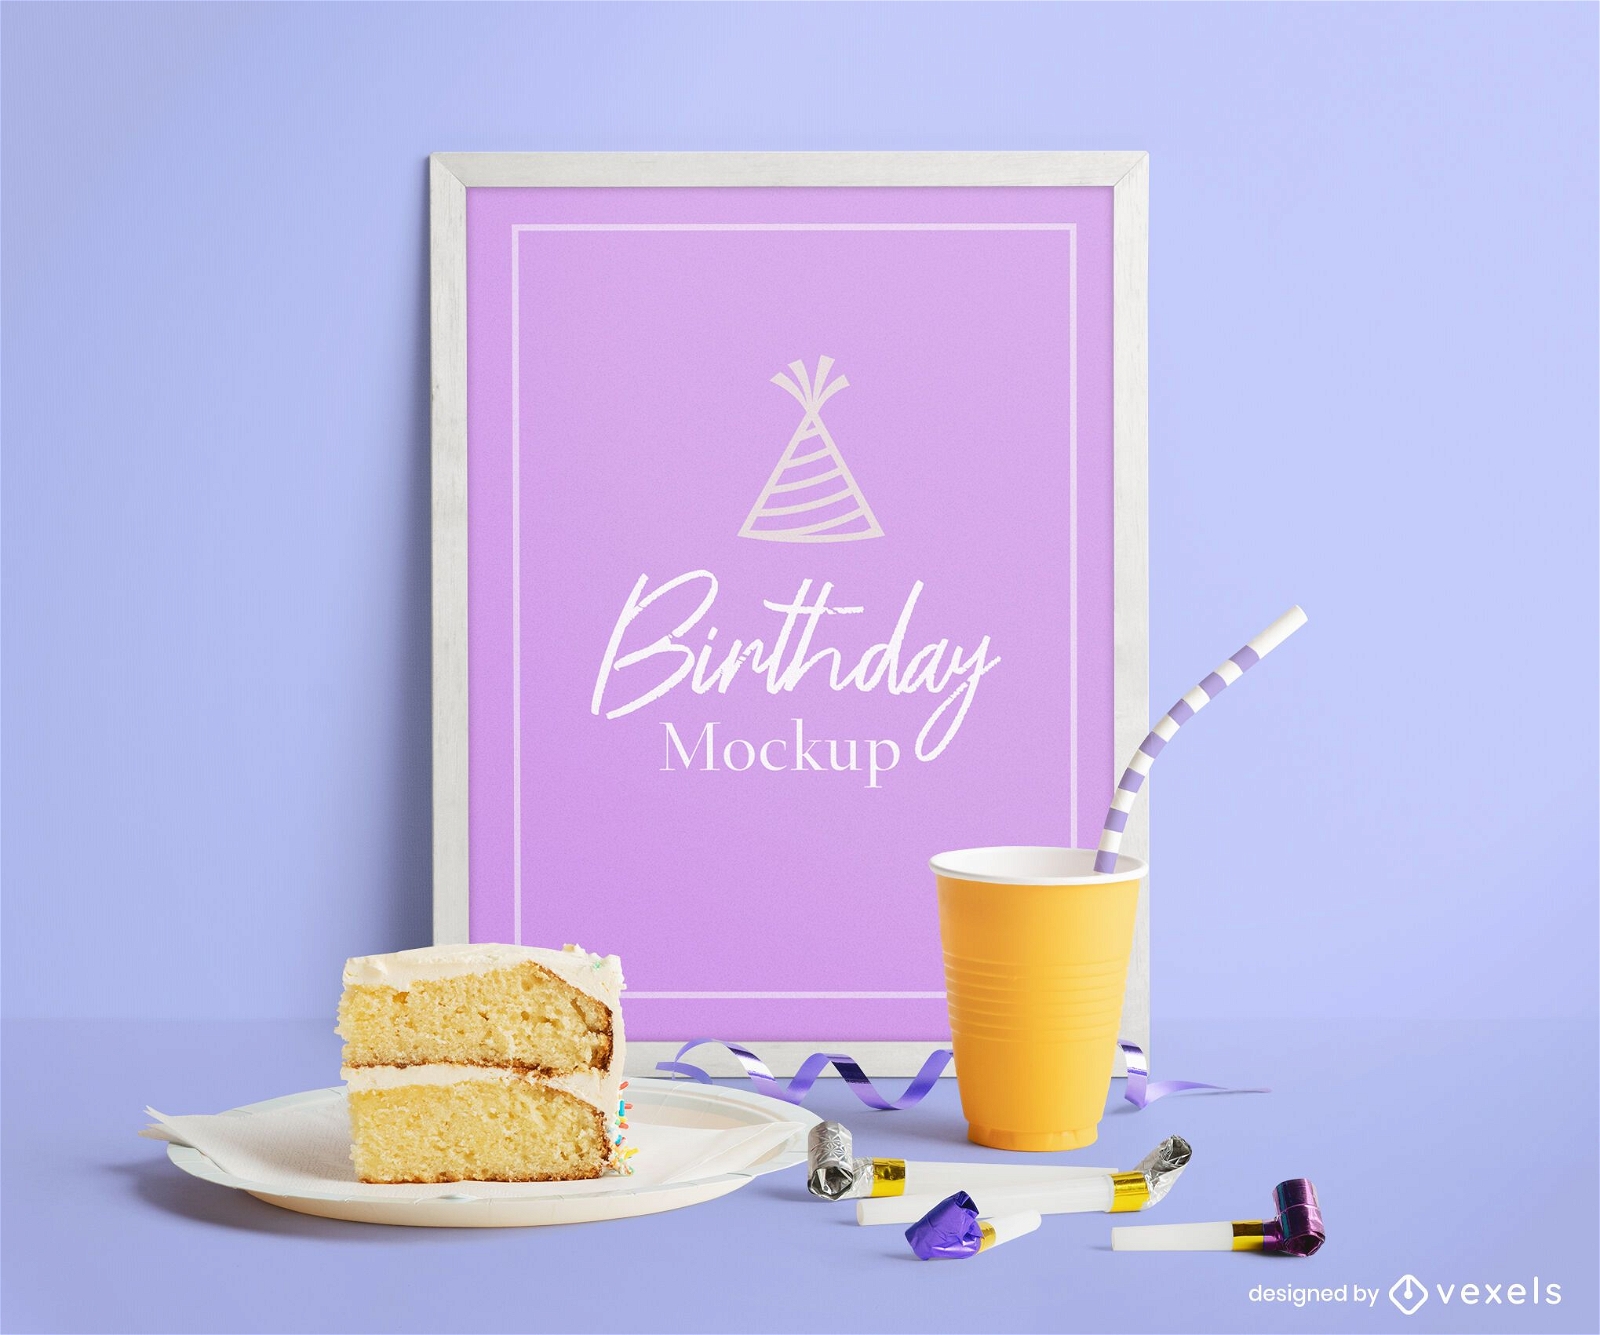 Composición de maqueta de cartel de cumpleaños